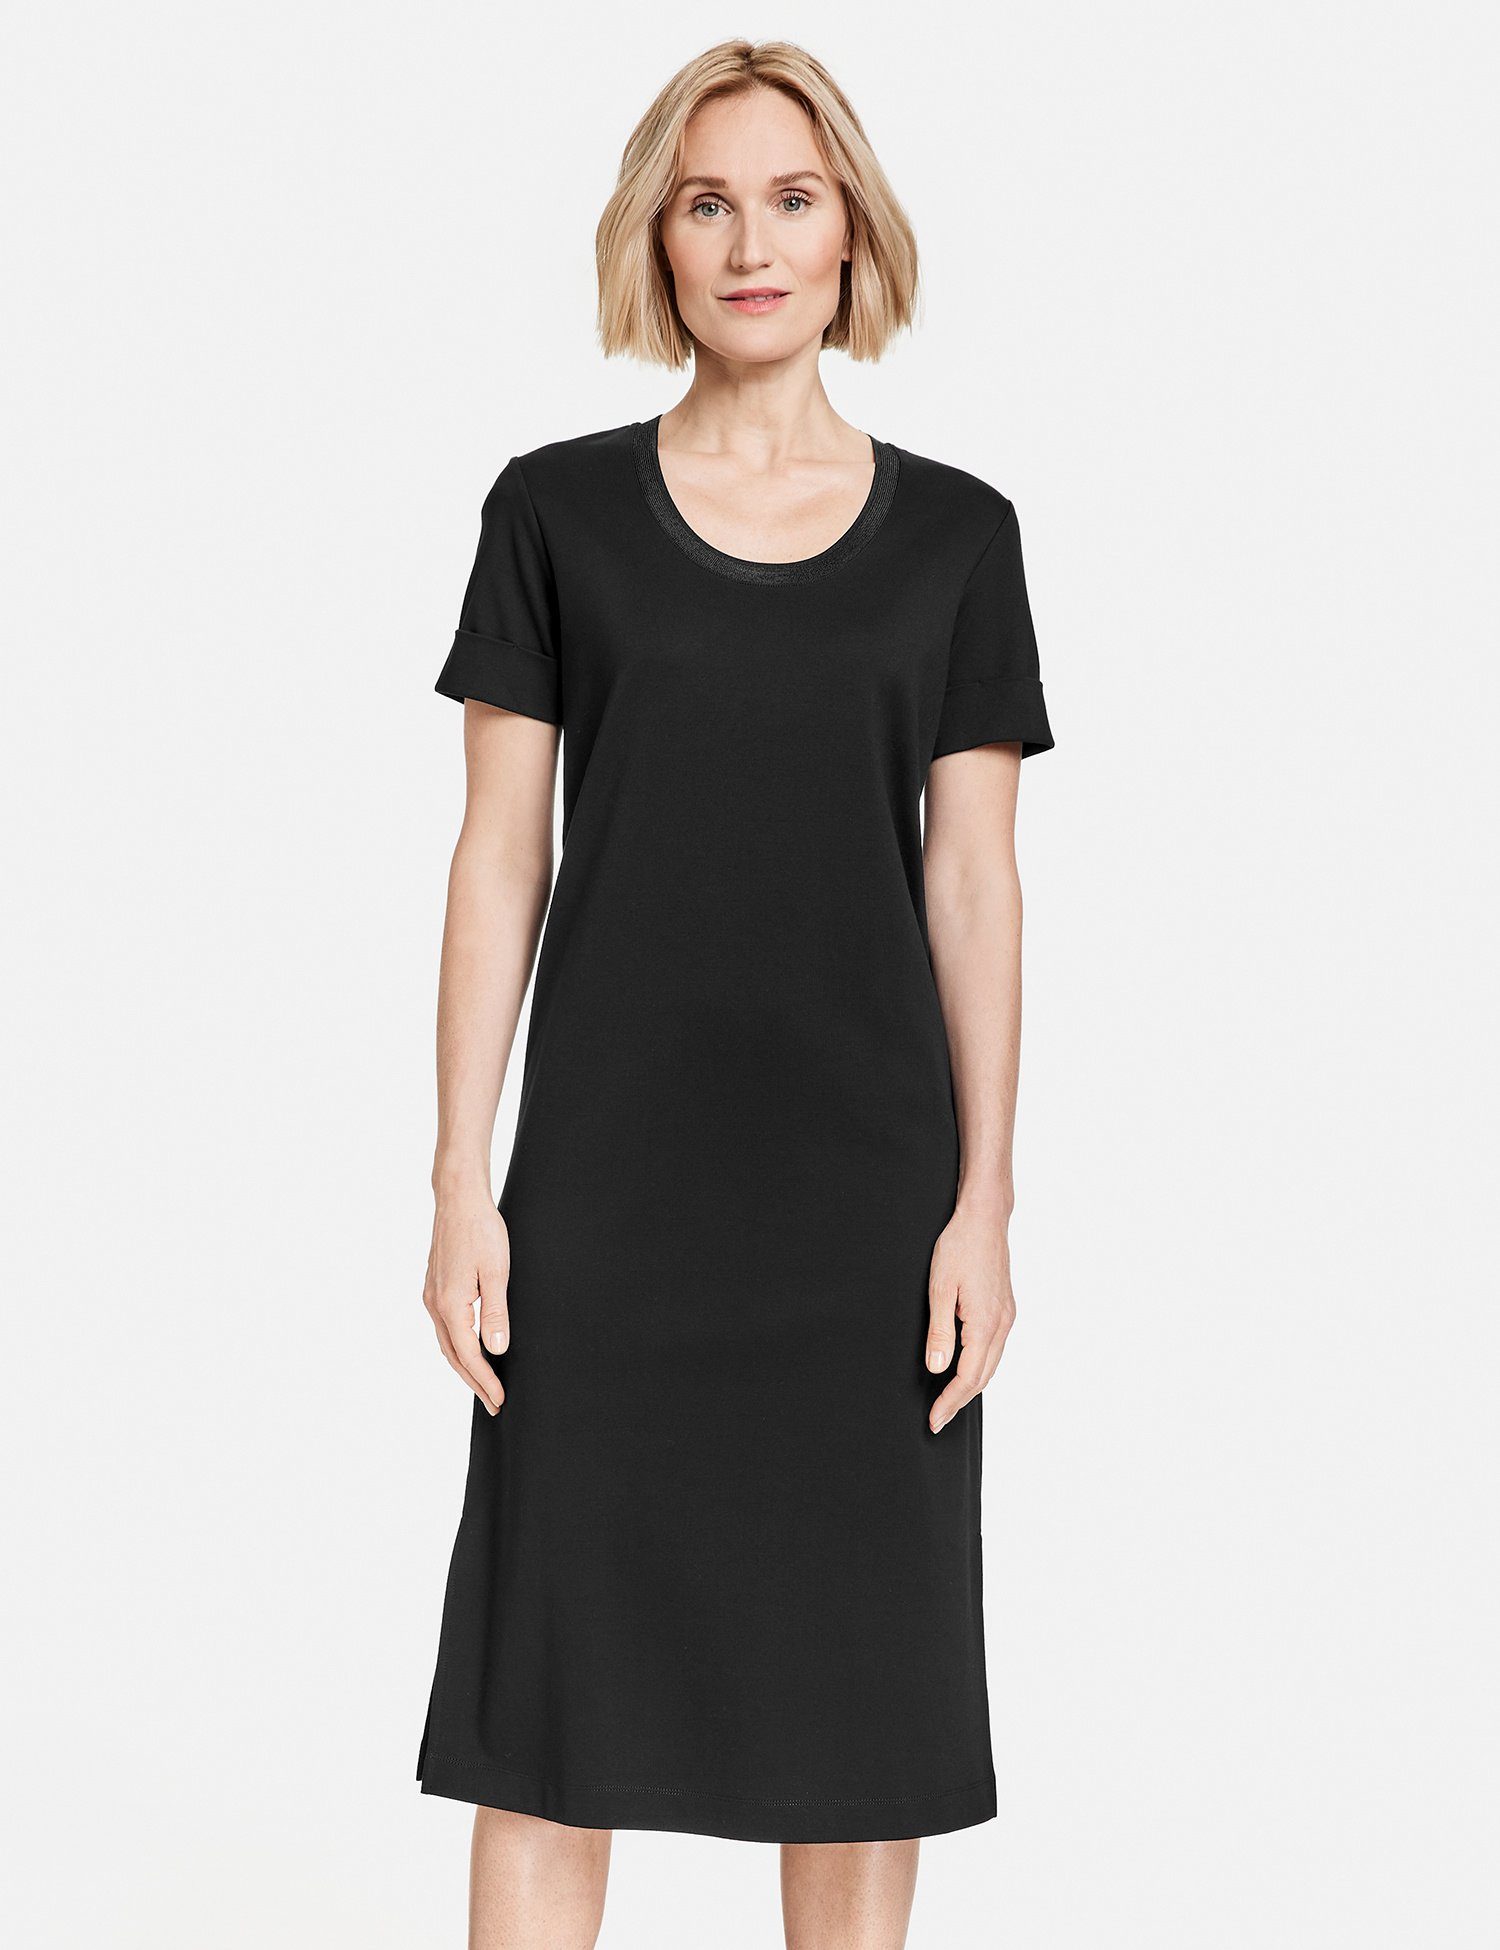 GERRY WEBER Midikleid Schlichtes Kleid mit schimmerndem Ausschnitt Schwarz | Kleider